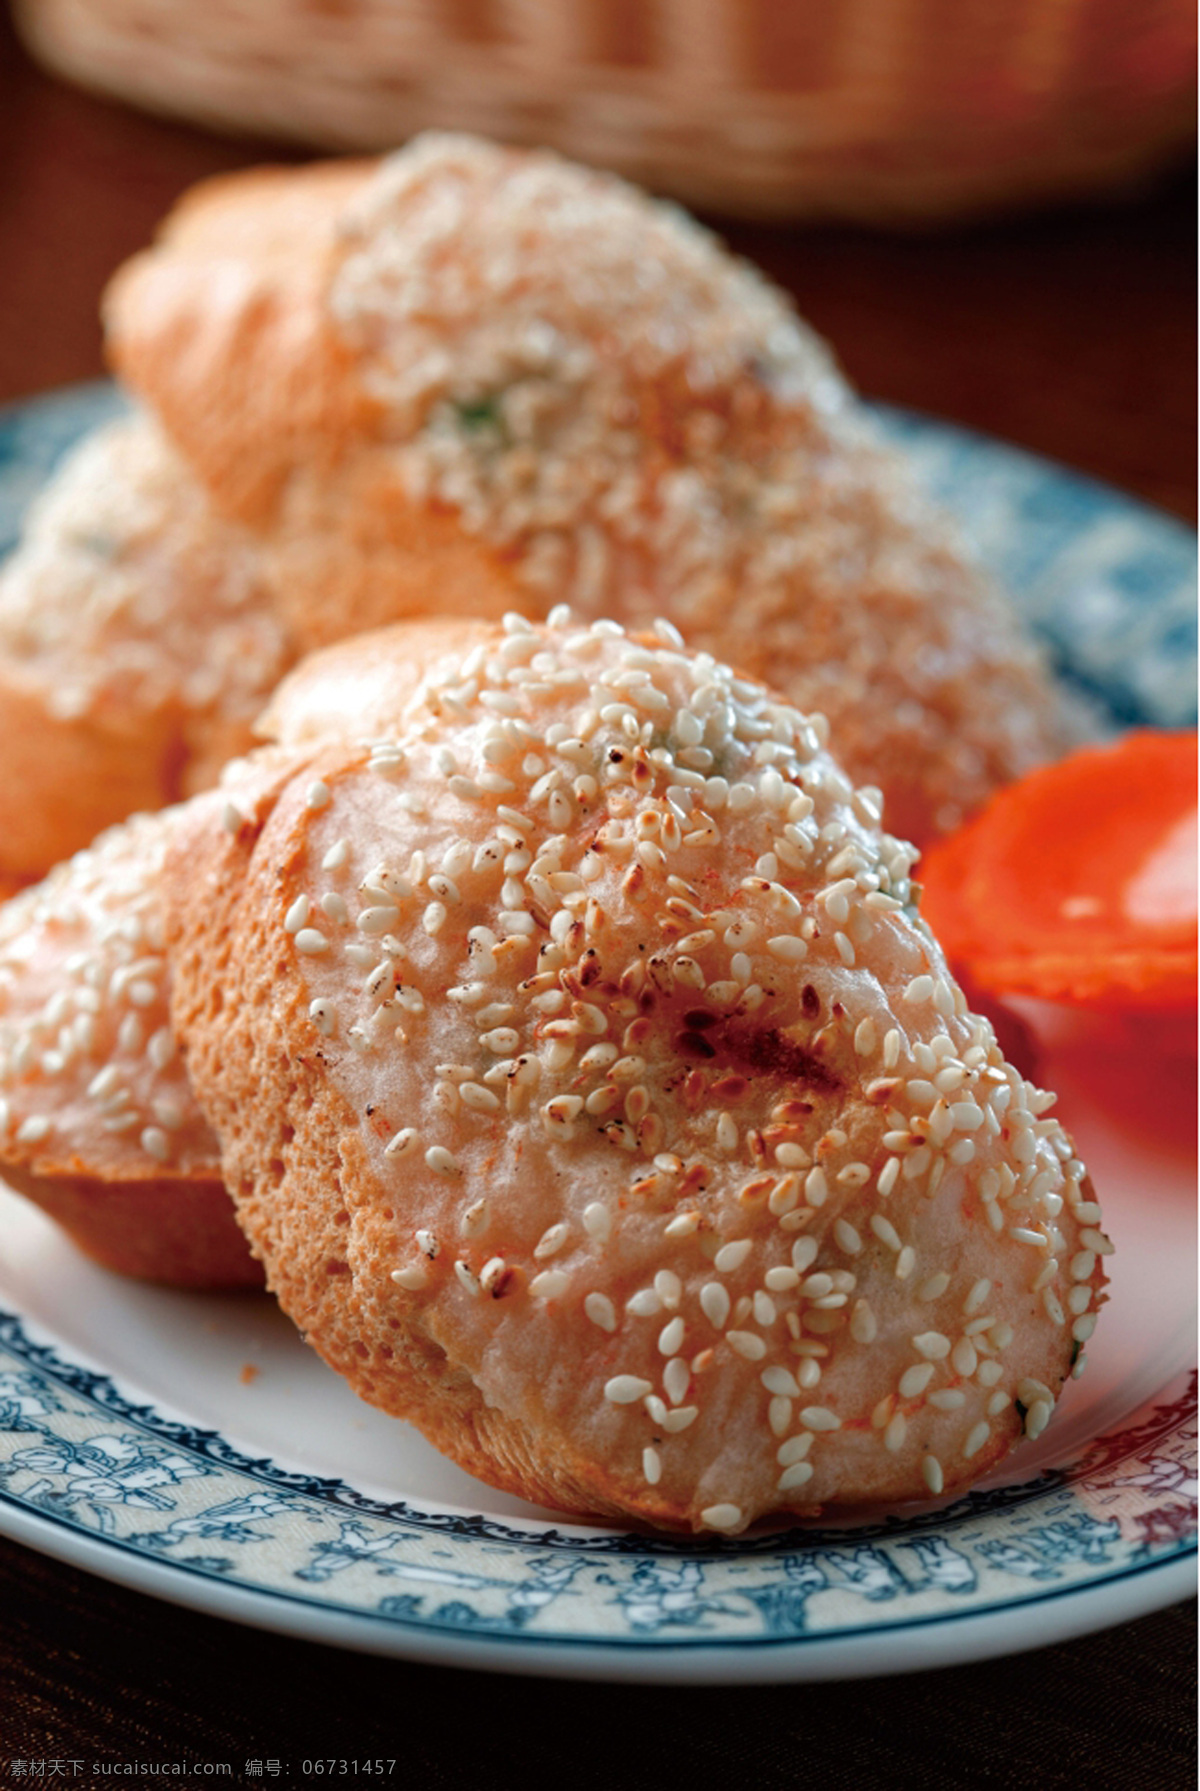 越式虾多士 越式菜肴 虾 多士 菜谱制作 高精度 餐饮美食 传统美食